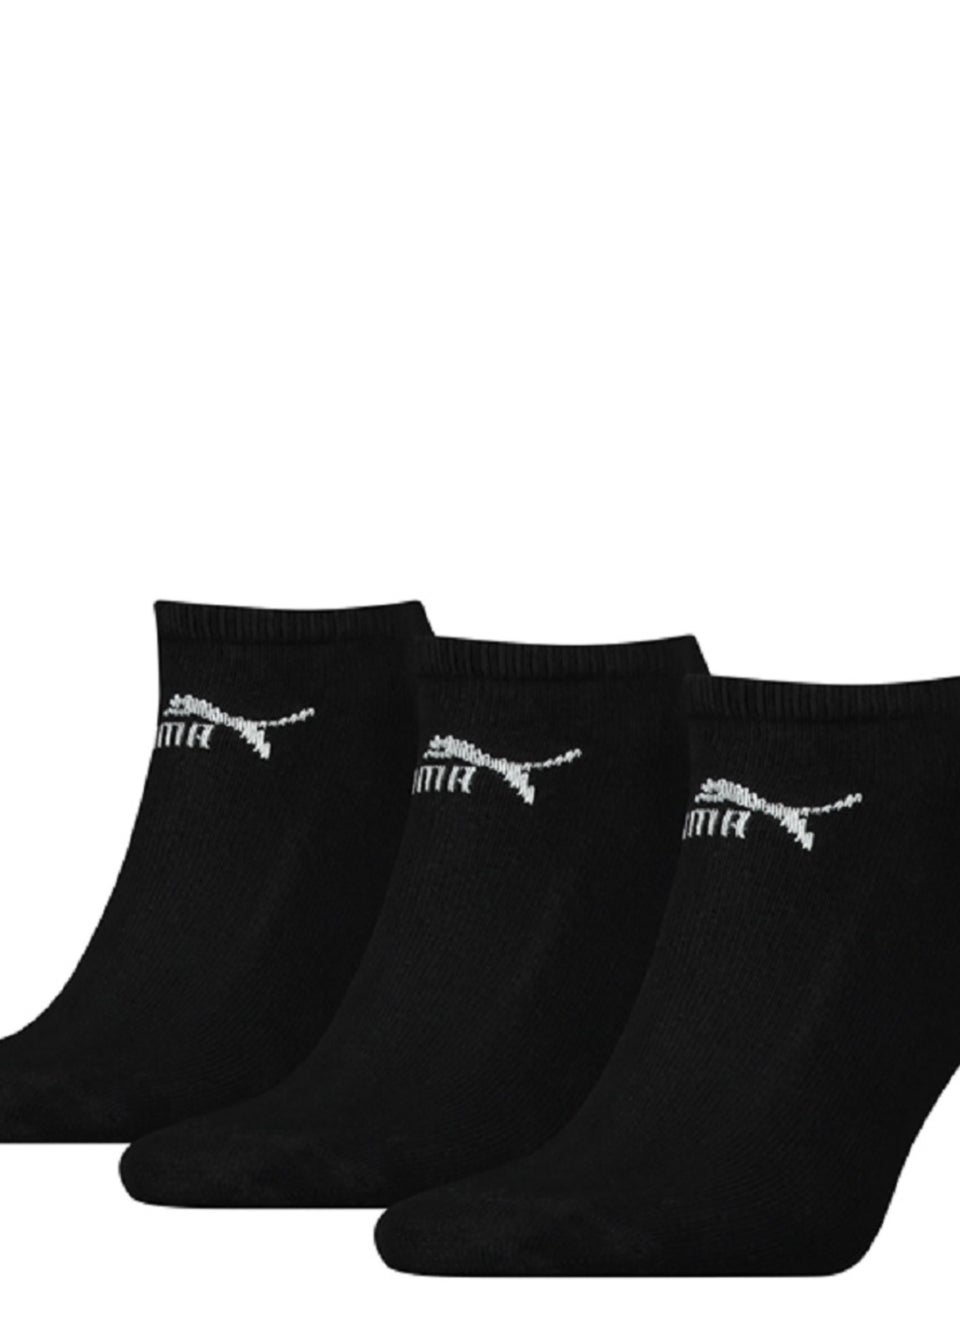 Puma Unisex Adult Trainer Socks (Pack of 3)